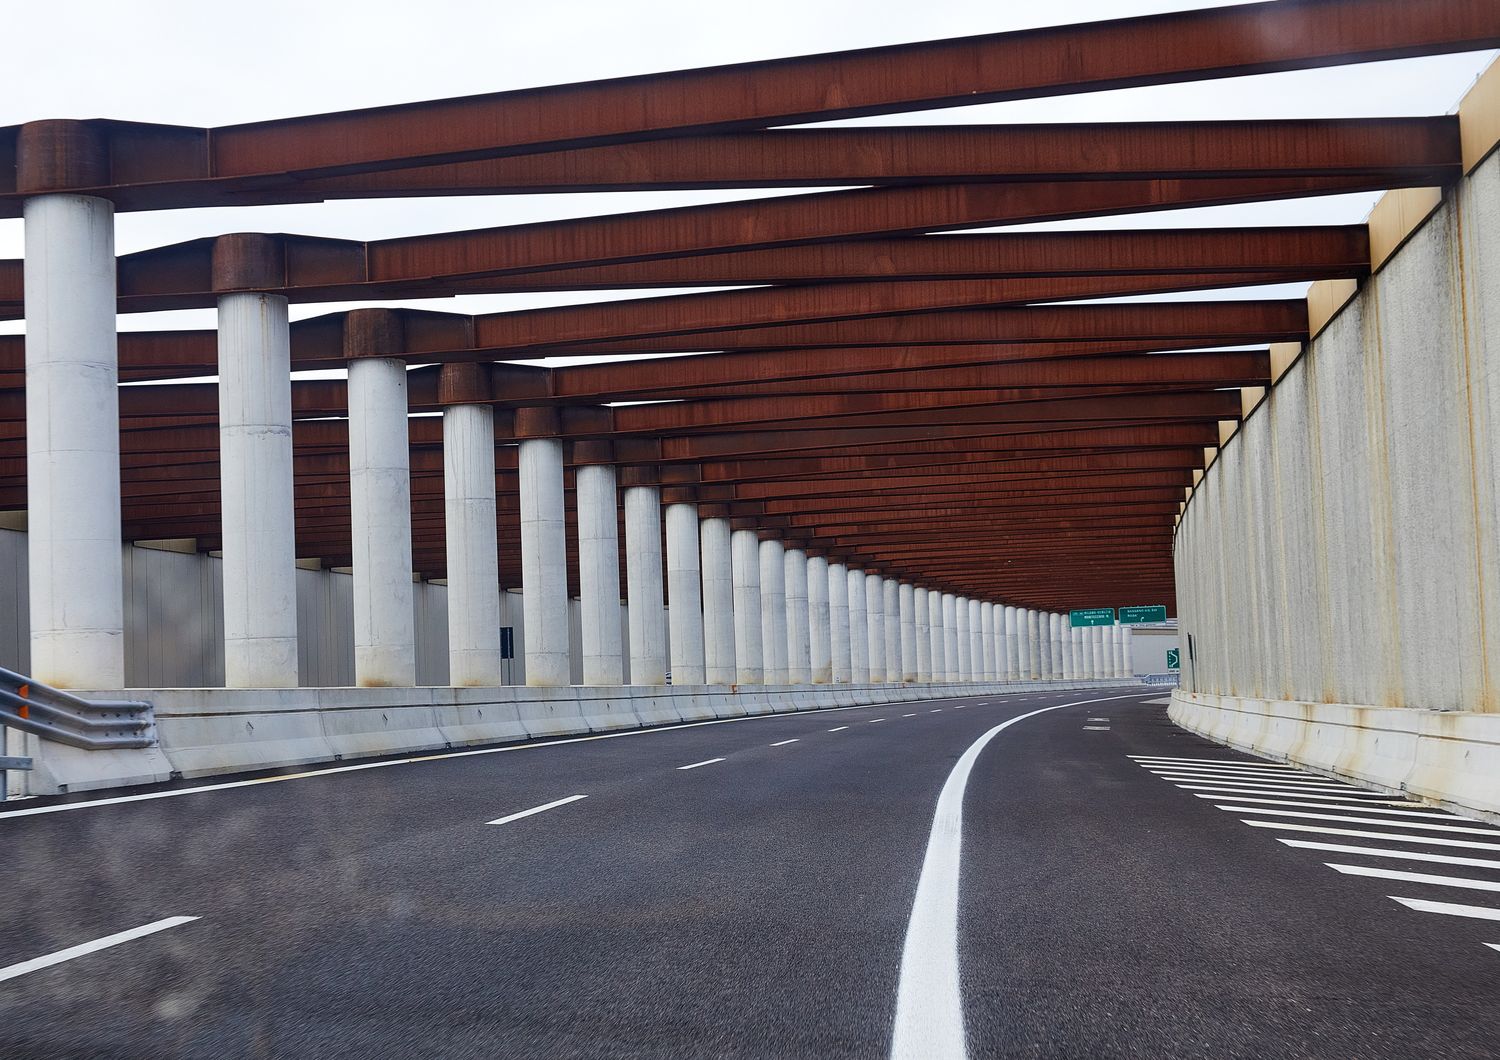 Autostrada in Veneto